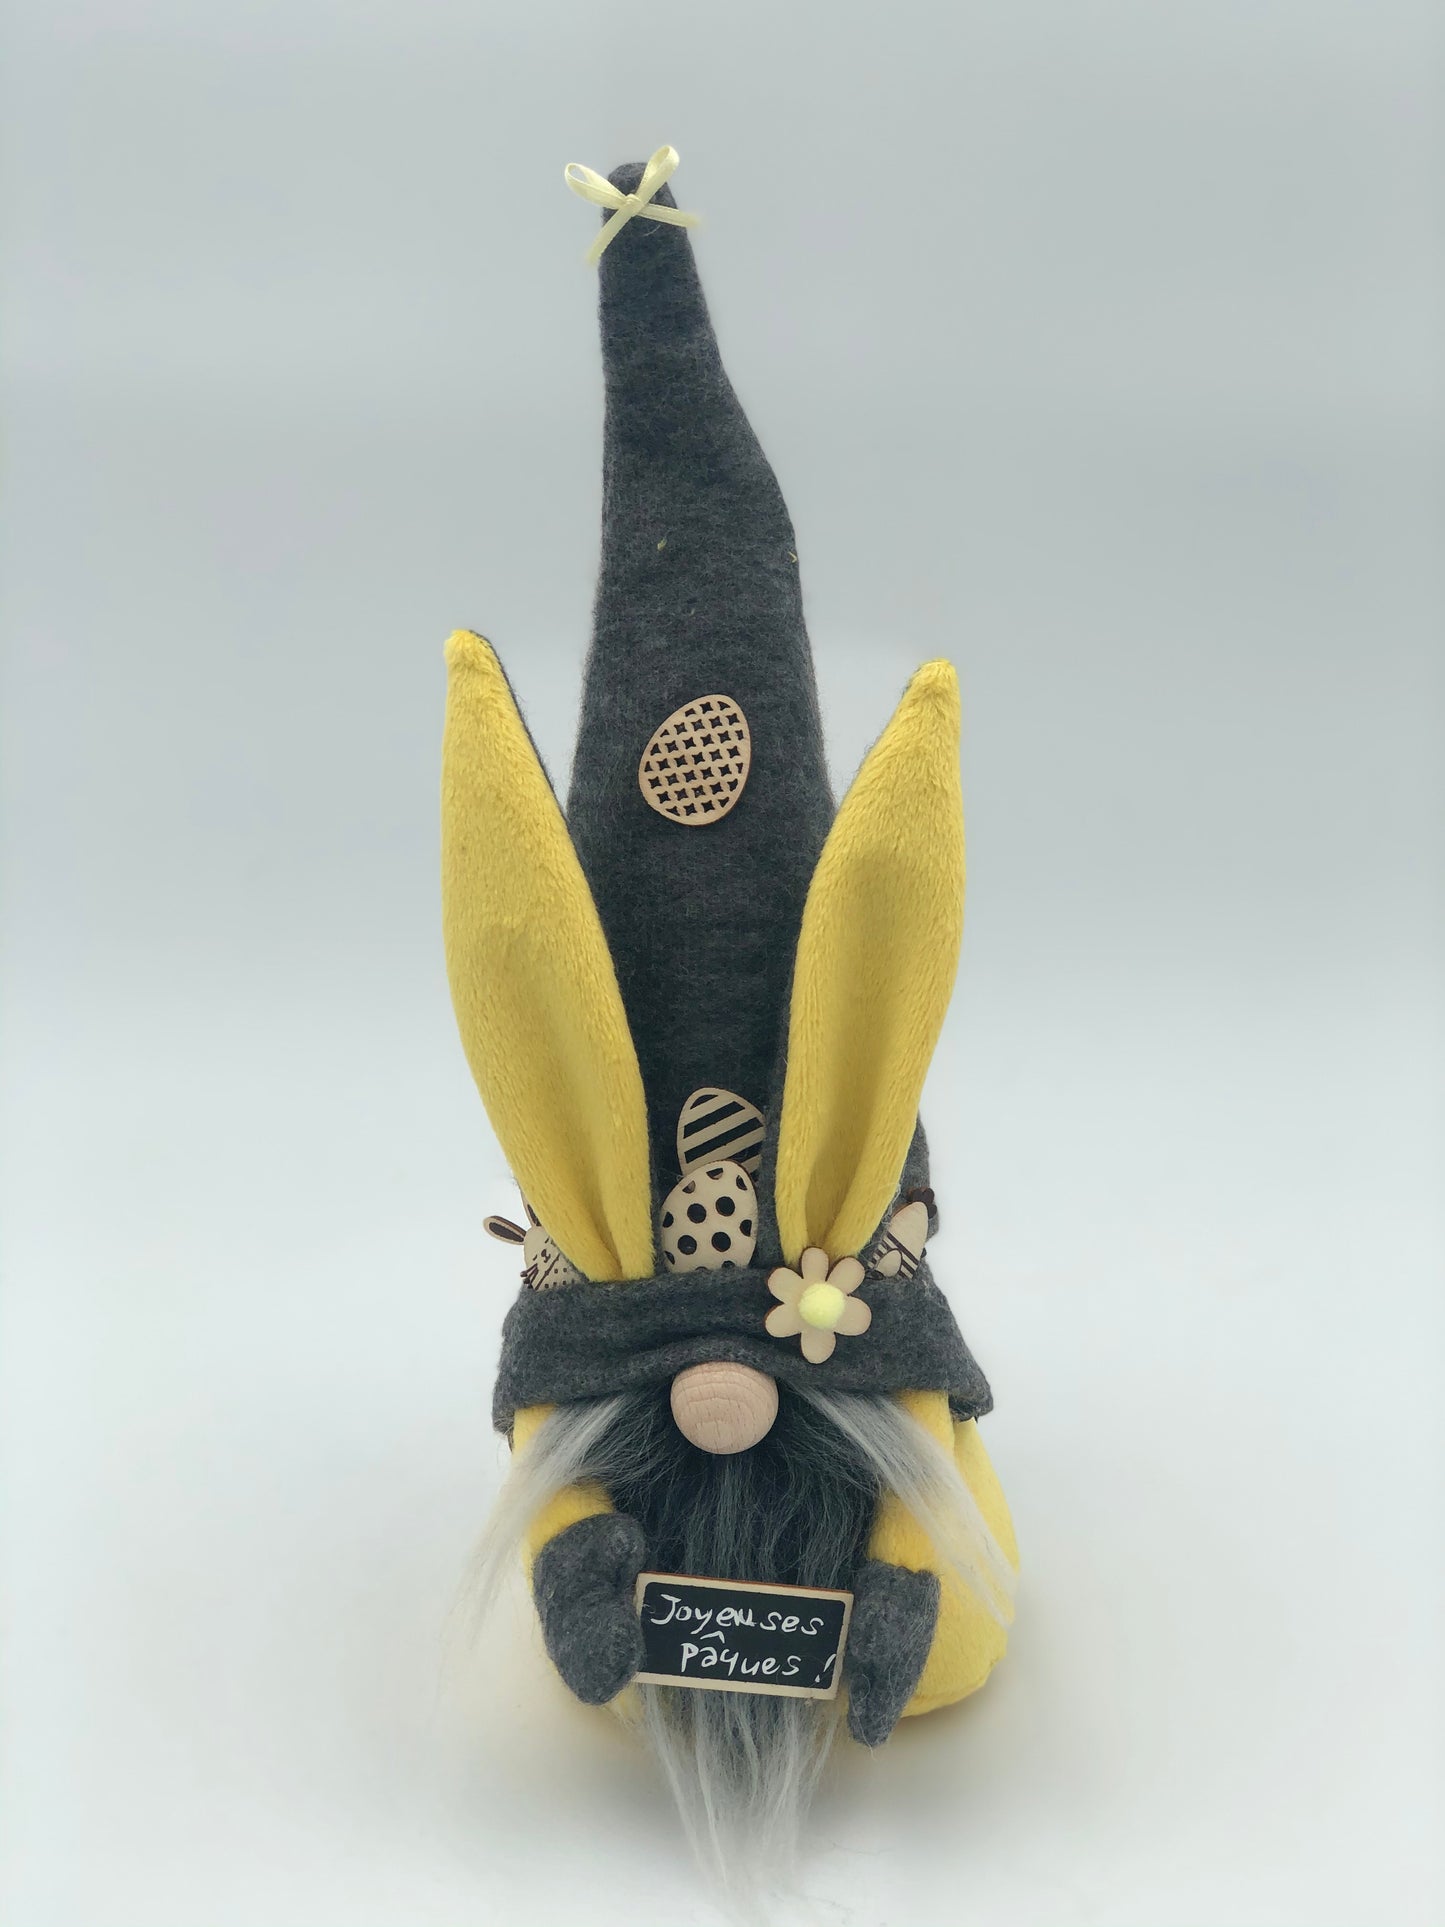 Gnome collection "Lapin de Pâques" - Gnome de Printemps - Articles de décoration